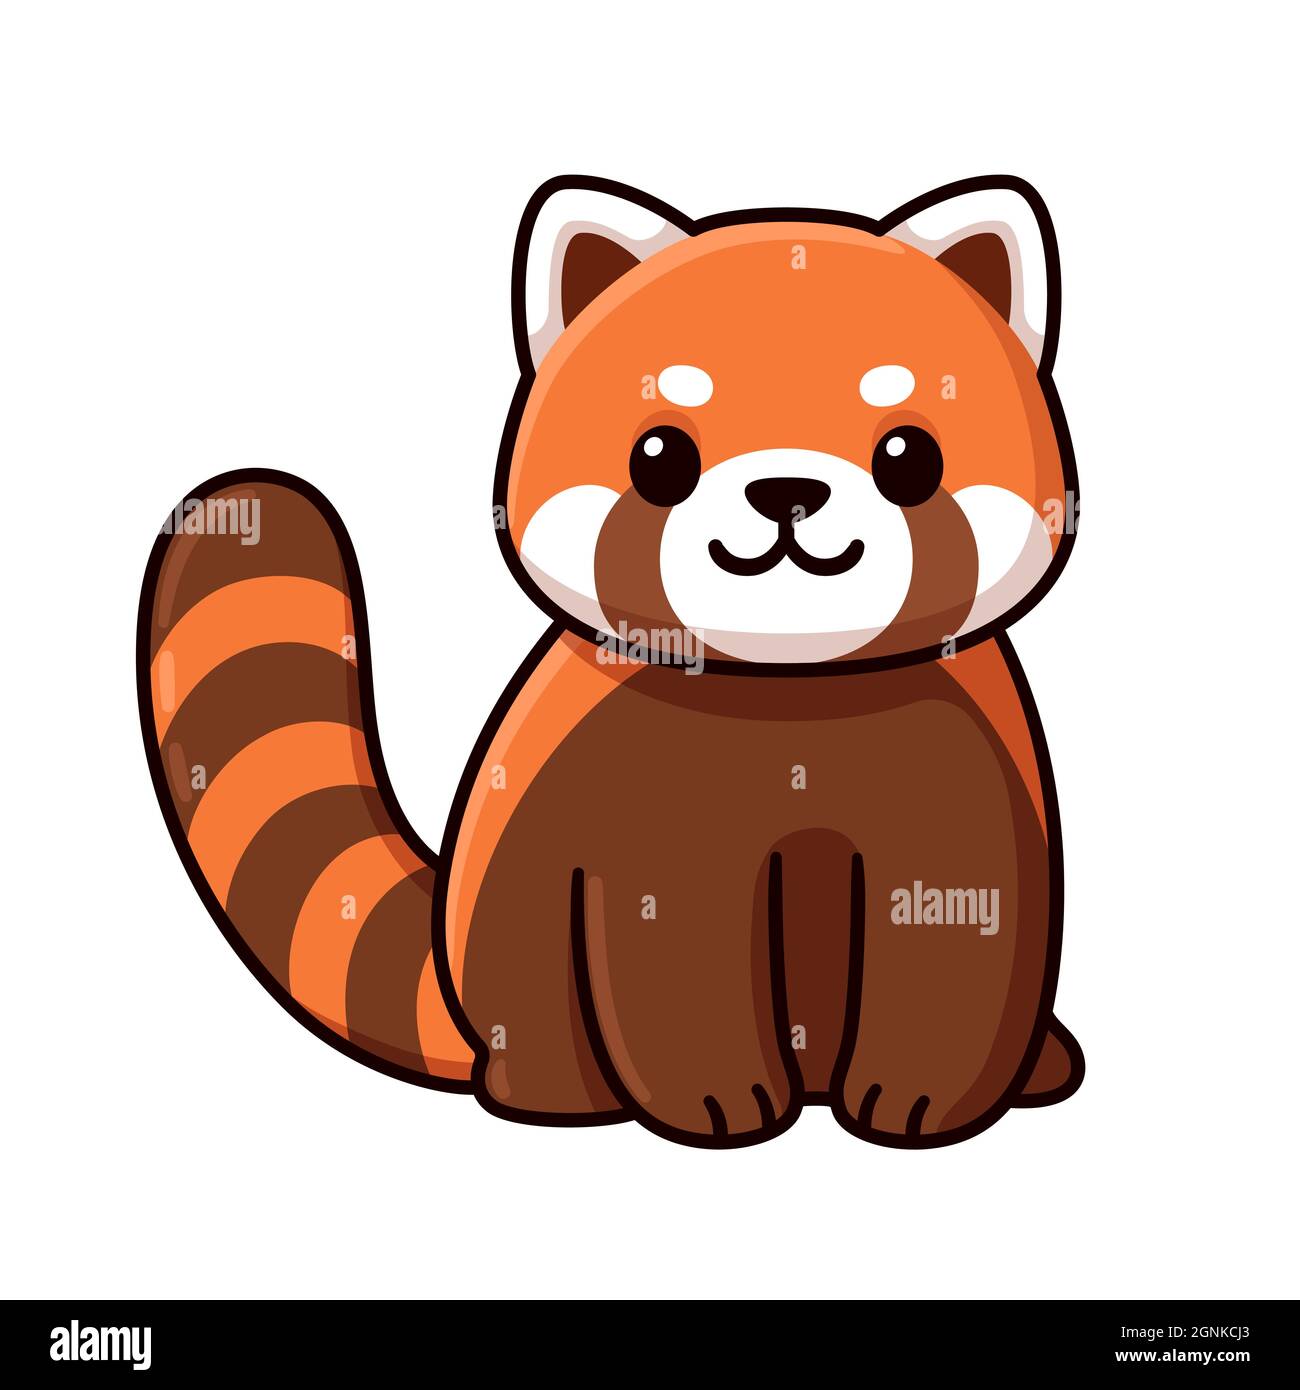 Red panda cartoon